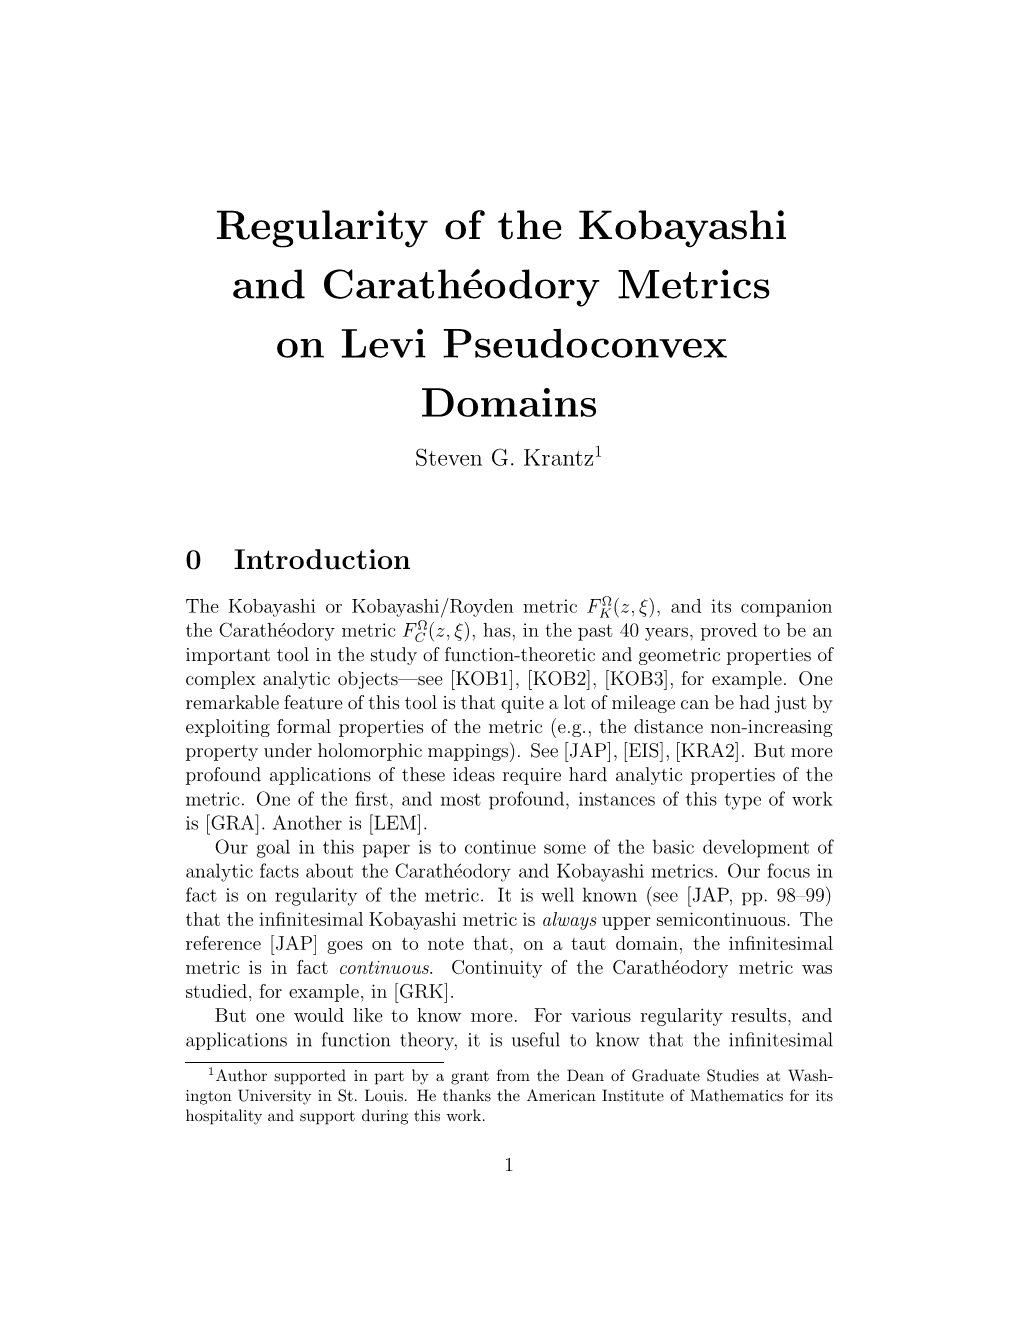 Regularity of the Kobayashi and Carathéodory Metrics on Levi Pseudoconvex Domains